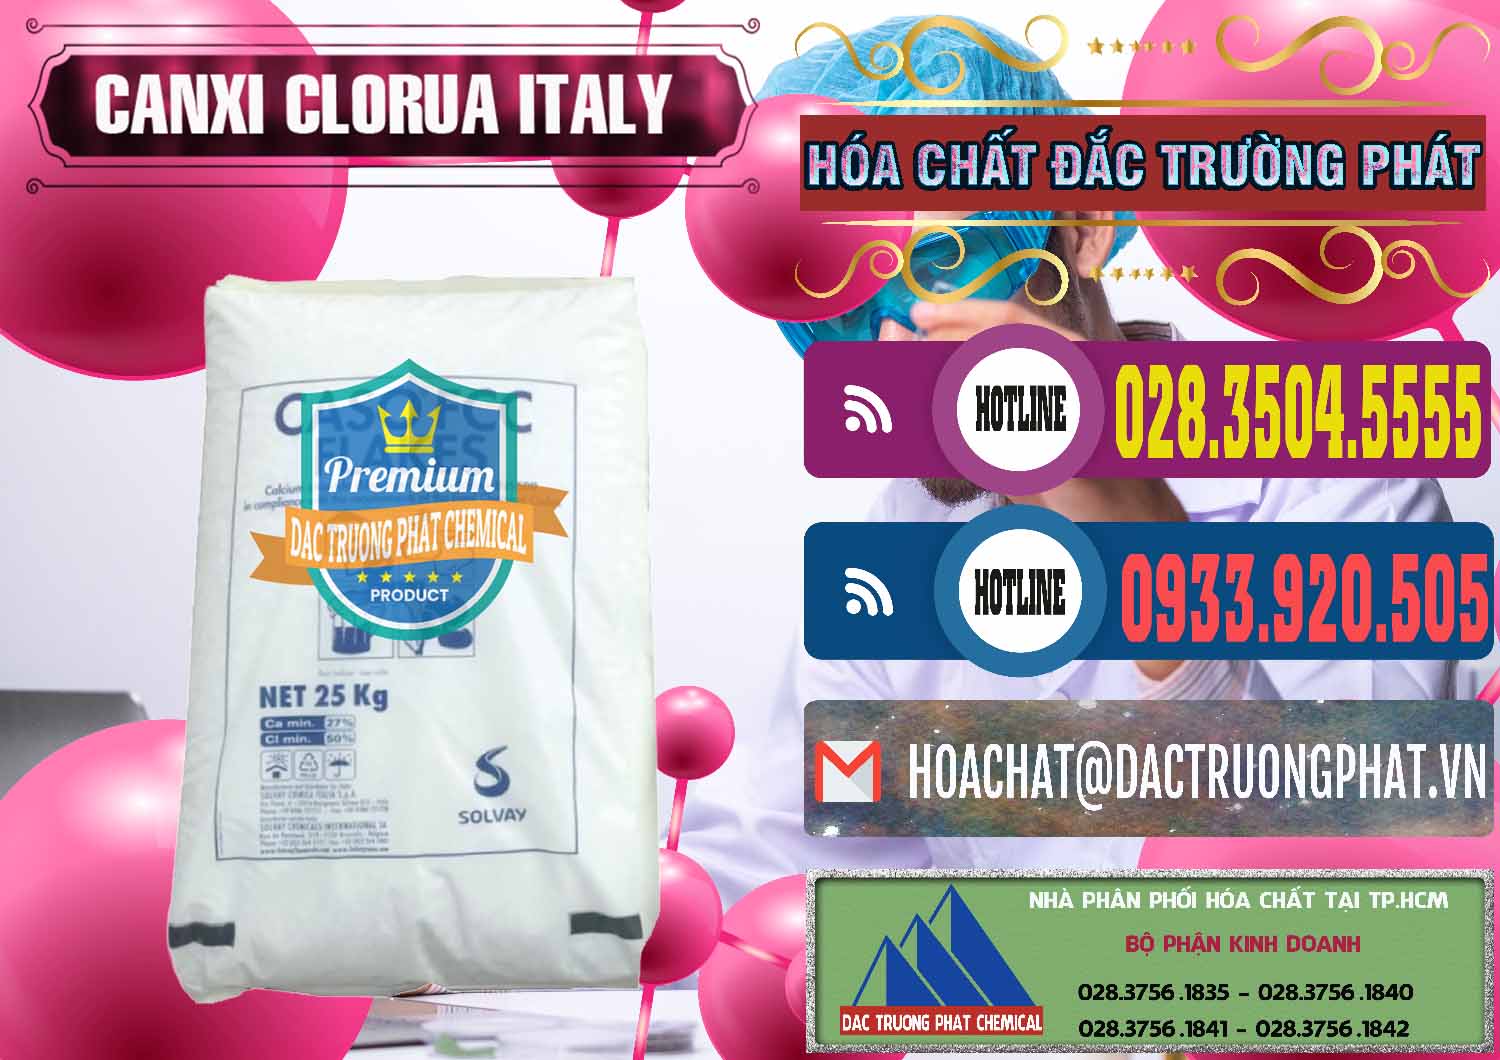 Đơn vị chuyên kinh doanh và bán CaCl2 – Canxi Clorua Food Grade Ý Italy - 0435 - Cty phân phối và bán hóa chất tại TP.HCM - muabanhoachat.com.vn